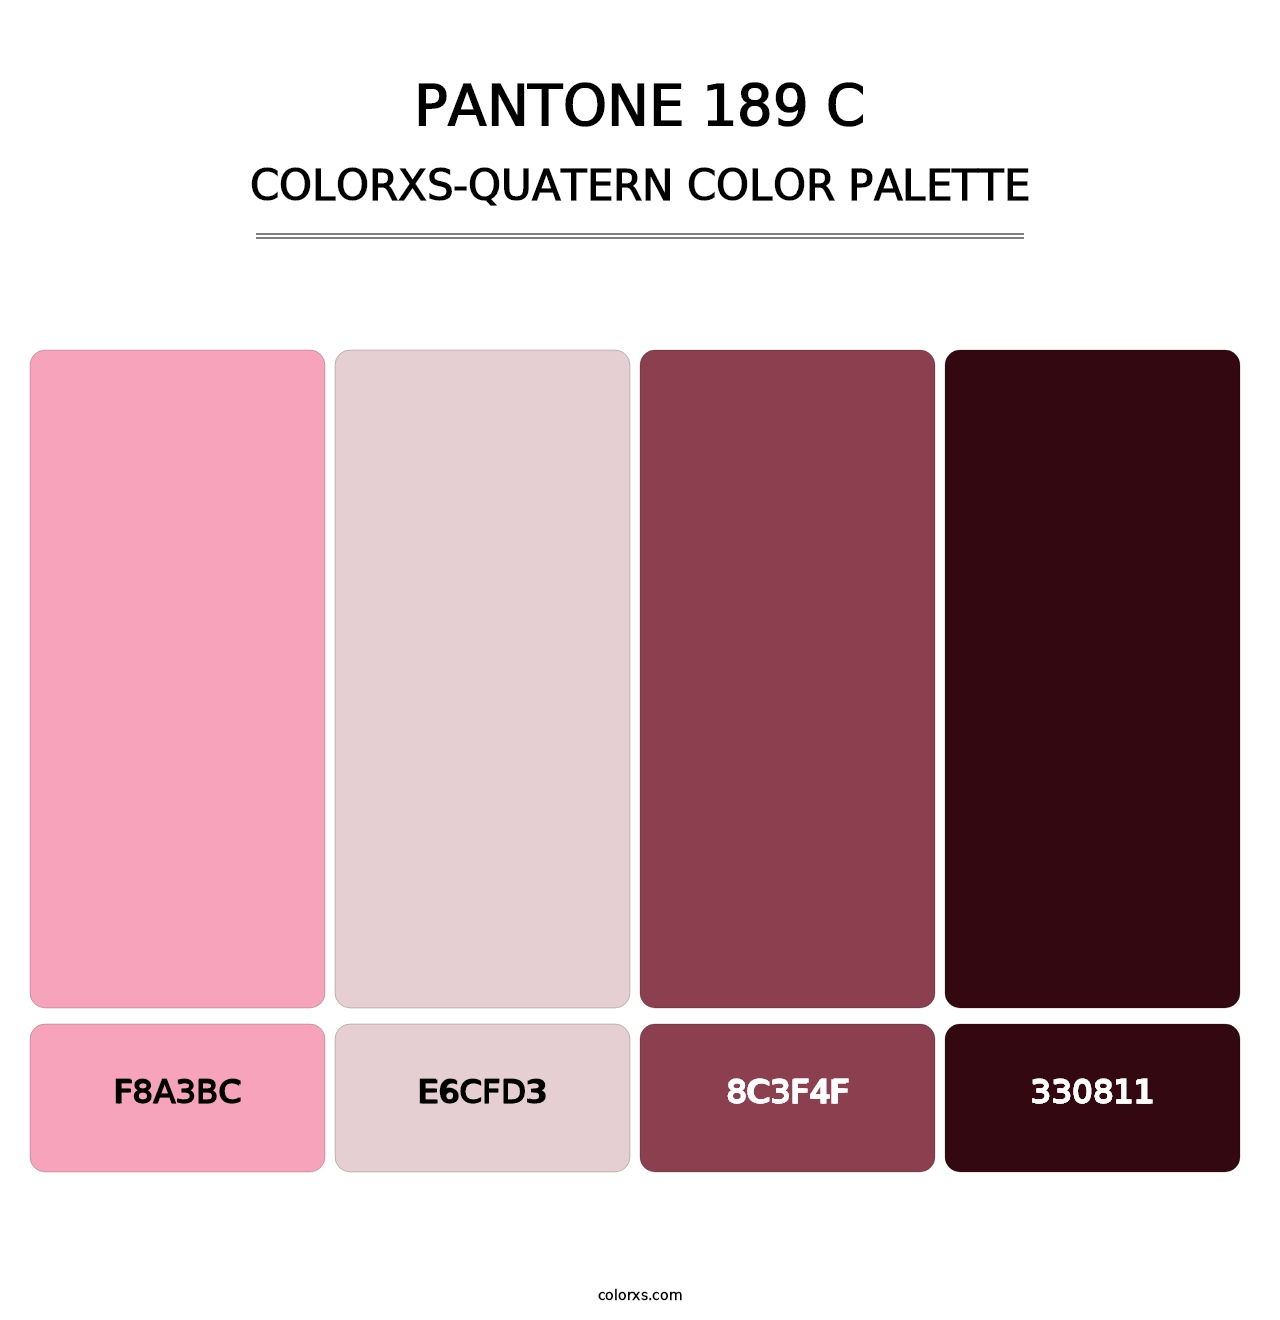 PANTONE 189 C - Colorxs Quatern Palette